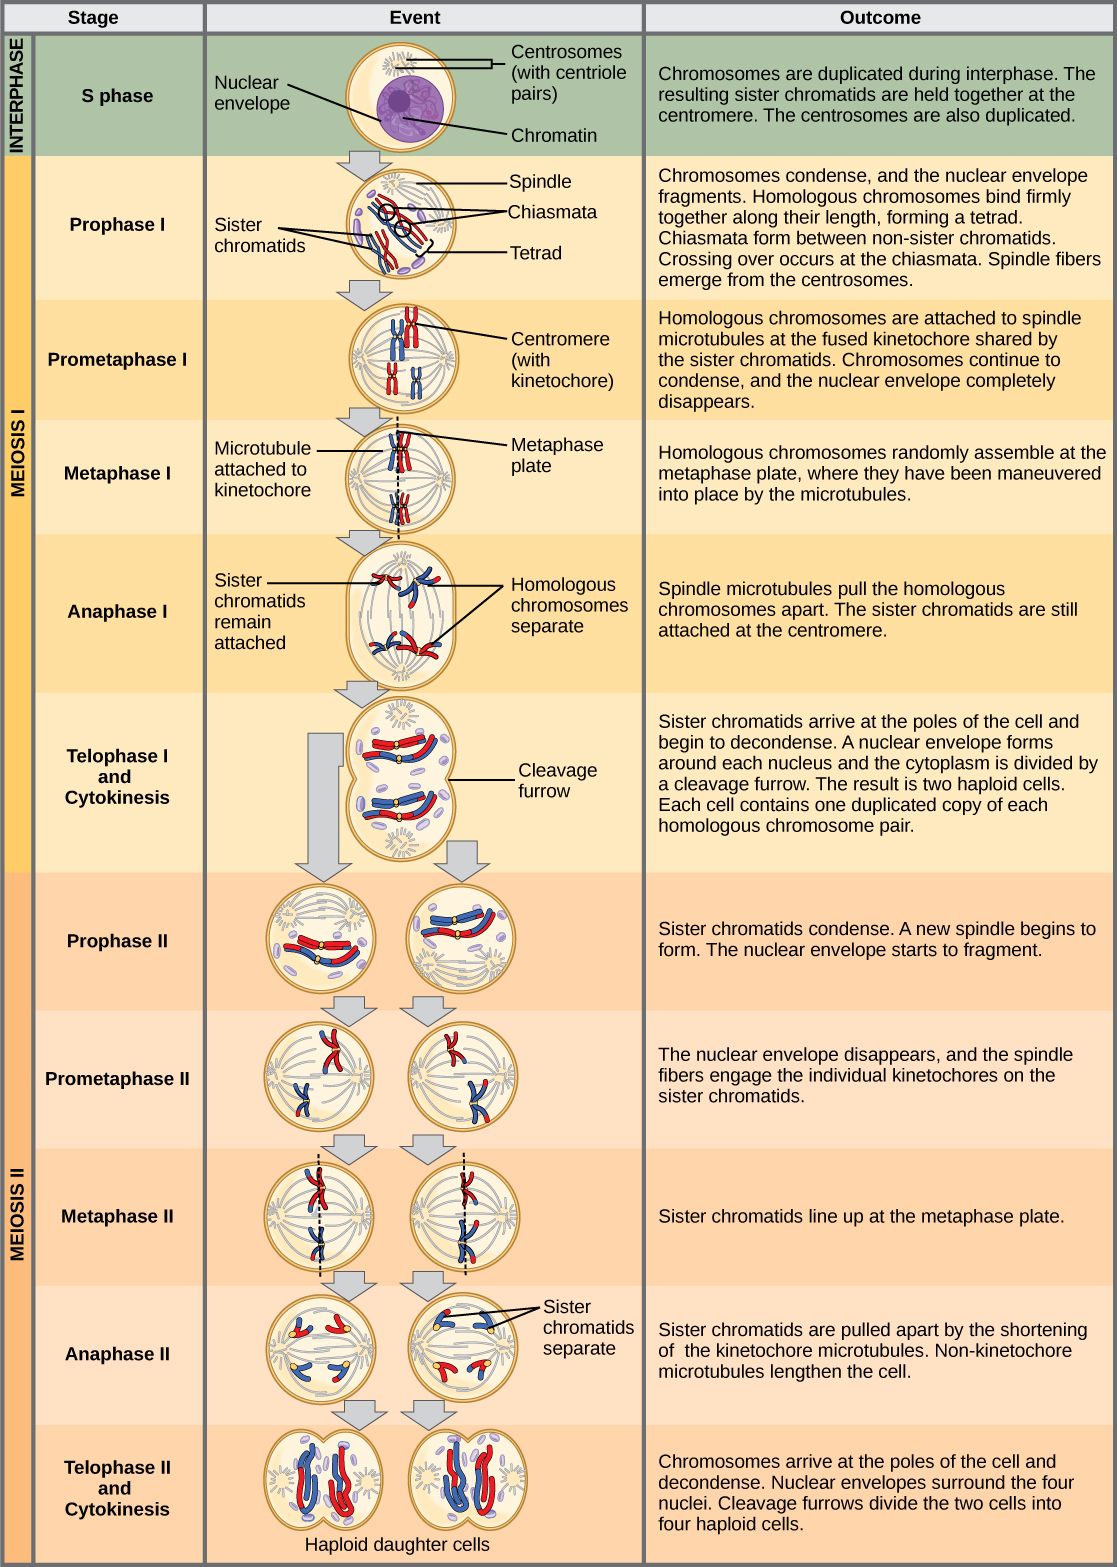 يوضح هذا الرسم التوضيحي مراحل الانقسام الاختزالي. في المرحلة البينية، قبل بدء الانقسام الاختزالي، تتكرر الكروموسومات. ثم ينتقل الانقسام الاختزالي الأول عبر عدة مراحل. في المرحلة الأولية الأولى، تبدأ الكروموسومات في التكثف وتشظايا الغلاف النووي. تصطف أزواج متجانسة من الكروموسومات، وتتشكل تشياسماتا بينها. يحدث العبور في تشياسماتا. تنبثق ألياف المغزل من السينتروسومات. في المرحلة الأولية الأولى، ترتبط الكروموسومات المتجانسة بالأنابيب الدقيقة للمغزل. في المرحلة الأولية الأولى، تصطف الكروموسومات المتجانسة عند لوحة الميتاتاز. في المرحلة الأولى، تقوم الأنابيب الدقيقة للمغزل بفصل الأزواج المتماثلة من الكروموسومات عن بعضها البعض. في الطور الأول والتحريك الخلوي، تصل الكروماتيدات الشقيقة إلى أقطاب الخلية وتبدأ في التكثف. يبدأ الغلاف النووي بالتشكل مرة أخرى، ويحدث انقسام الخلايا. ثم ينتقل الانقسام الاختزالي الثاني عبر عدة مراحل. في المرحلة التمهيدية الثانية، تتكثف الكروماتيدات الشقيقة وتشظايا الغلاف النووي. يبدأ المغزل الجديد بالتشكل. في المرحلة البروميتافازية الثانية، تصبح الكروماتيدات الشقيقة مرتبطة بالعمل الحركي. في ميتاتاز II، تصطف الكروماتيدات الشقيقة عند لوحة الميتاتاز. في المرحلة الثانية، يتم تفكيك الكروماتيدات الشقيقة بواسطة مغزل تقصير. في المرحلة التيلوفازية الثانية والتحريك الخلوي، يتشكل الغلاف النووي مرة أخرى ويحدث انقسام الخلية، مما ينتج عنه أربع خلايا ابنة أحادية الصبغيات.